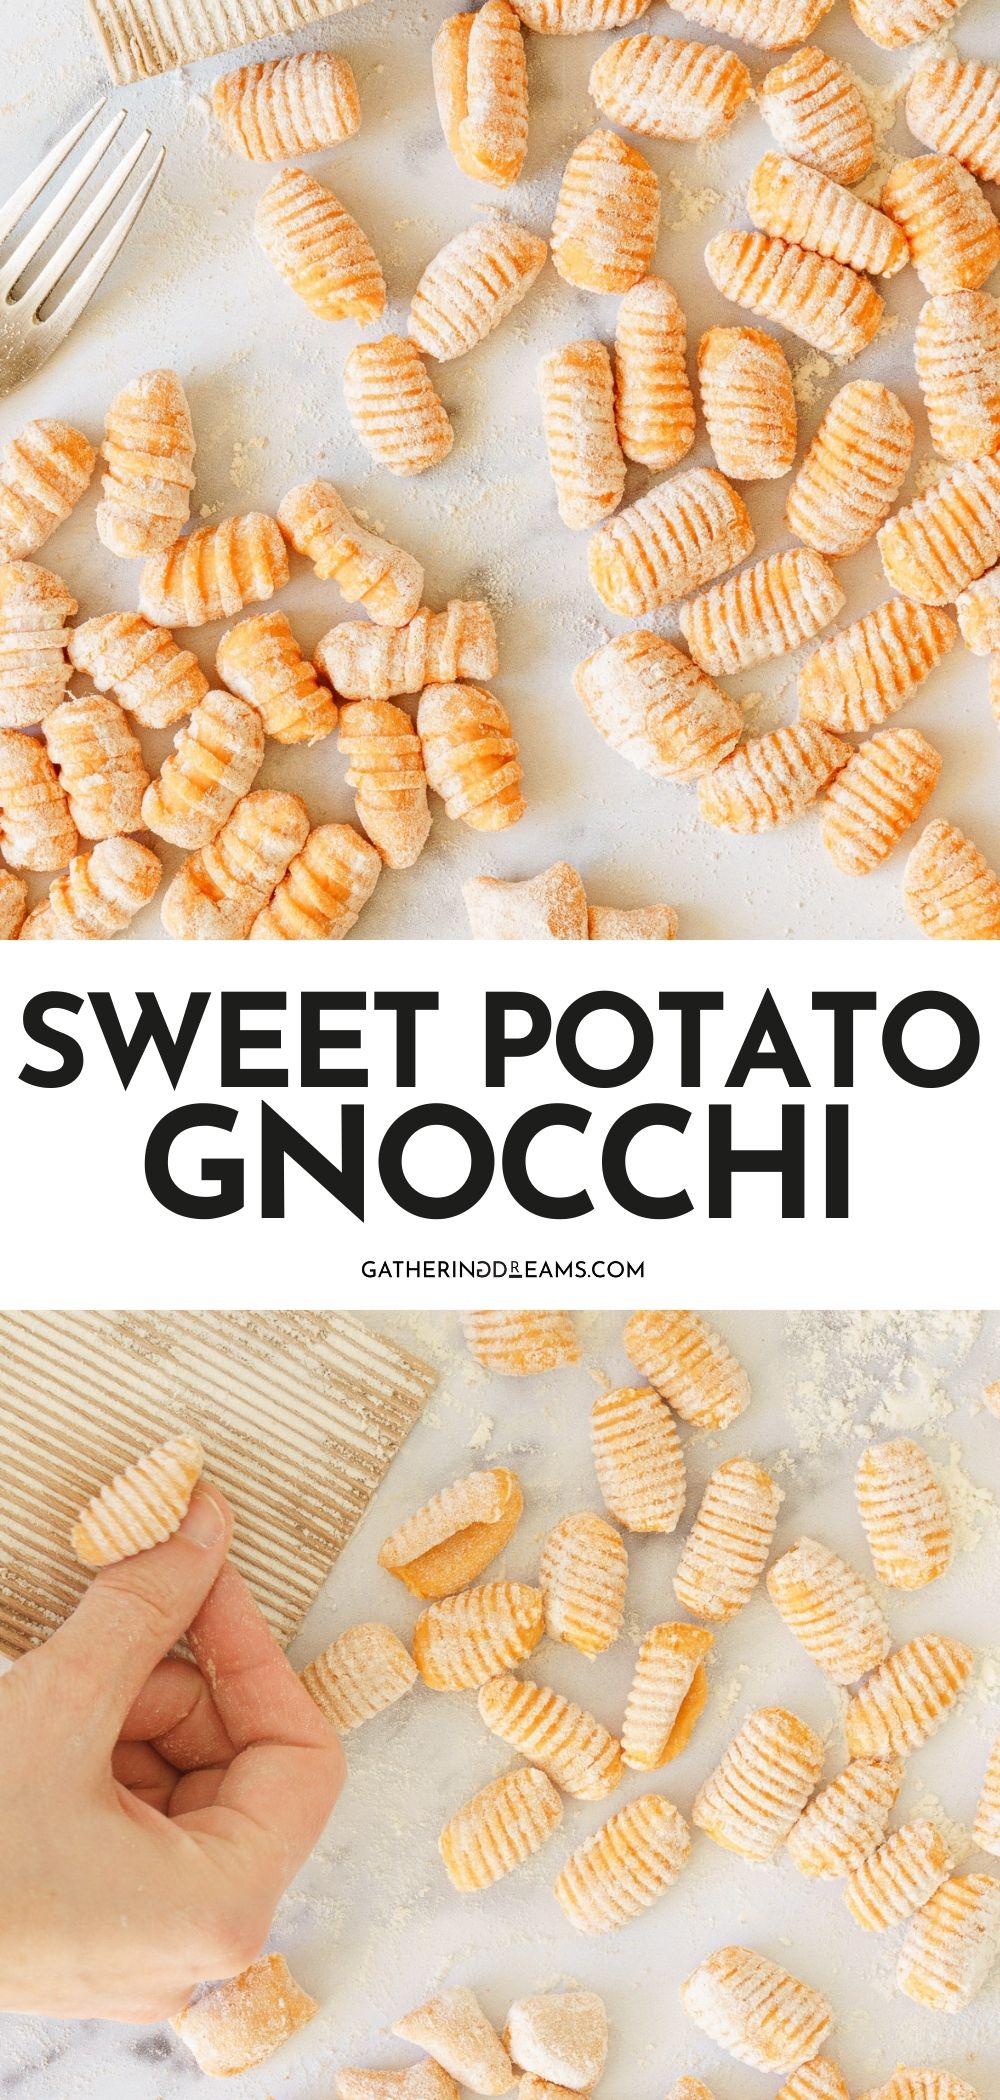 Sweet Potato Gnocchi - Gathering Dreams